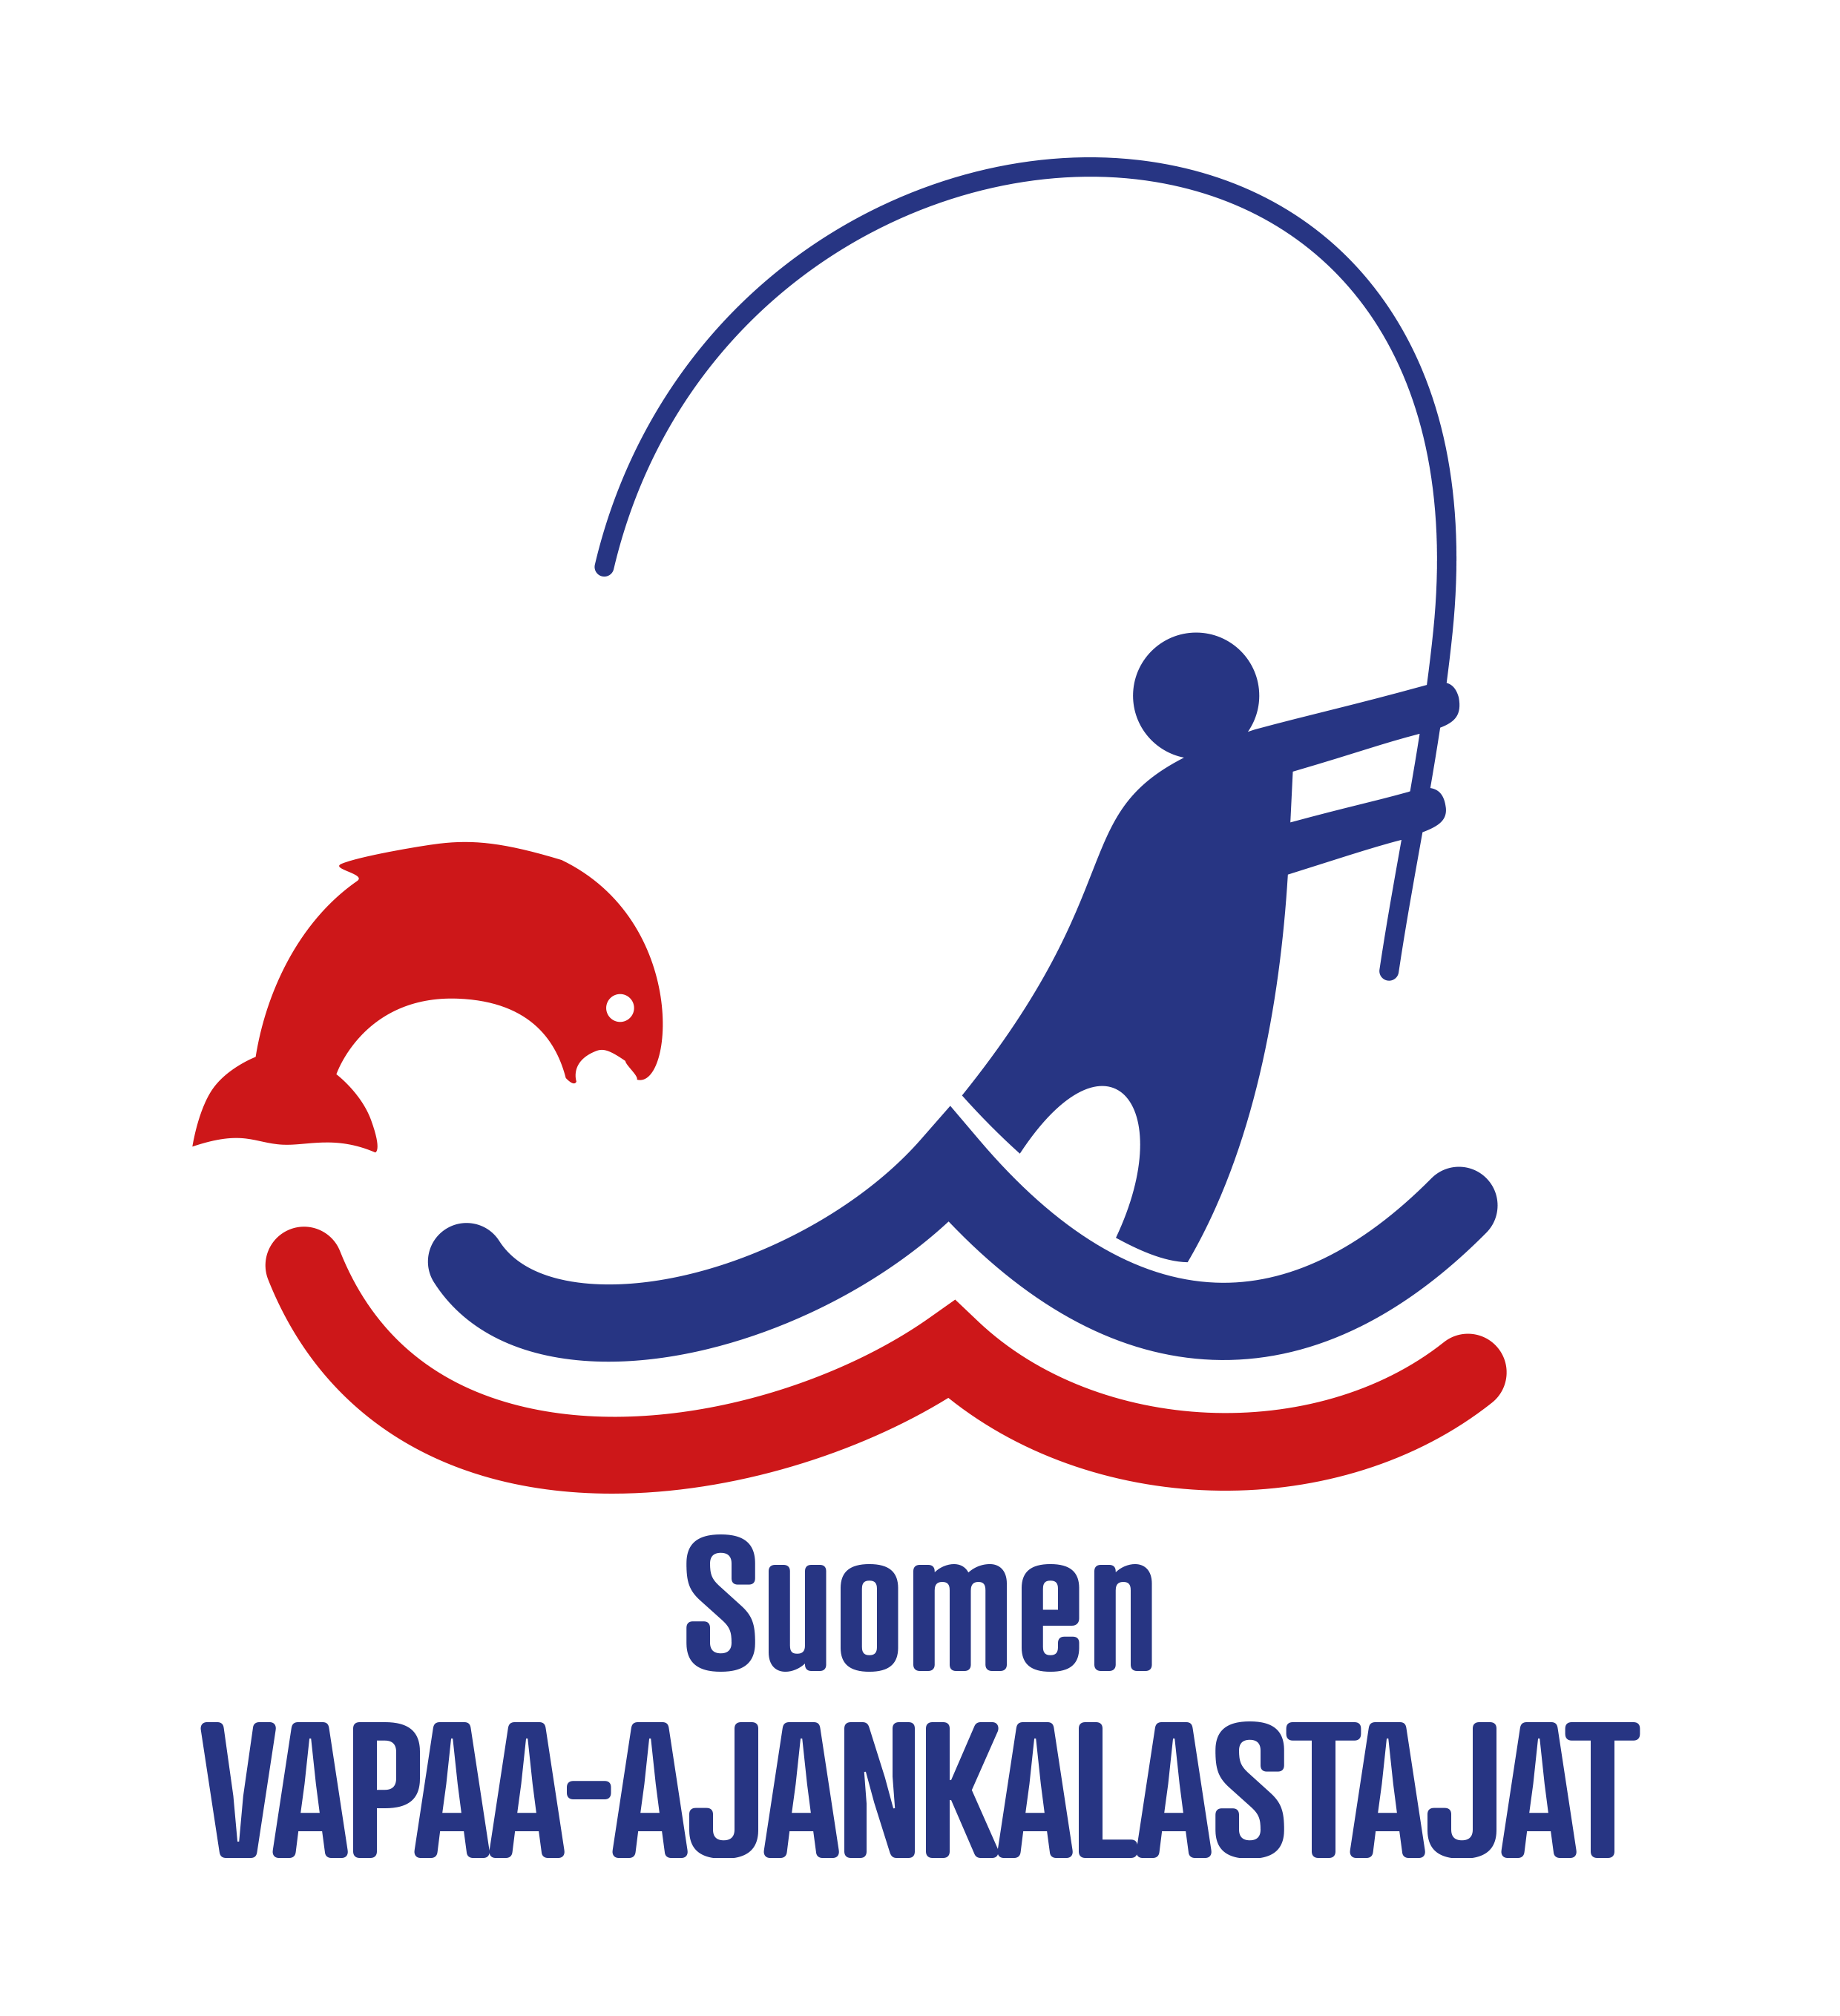 Suomen Vapaa-ajan kalastajat logo